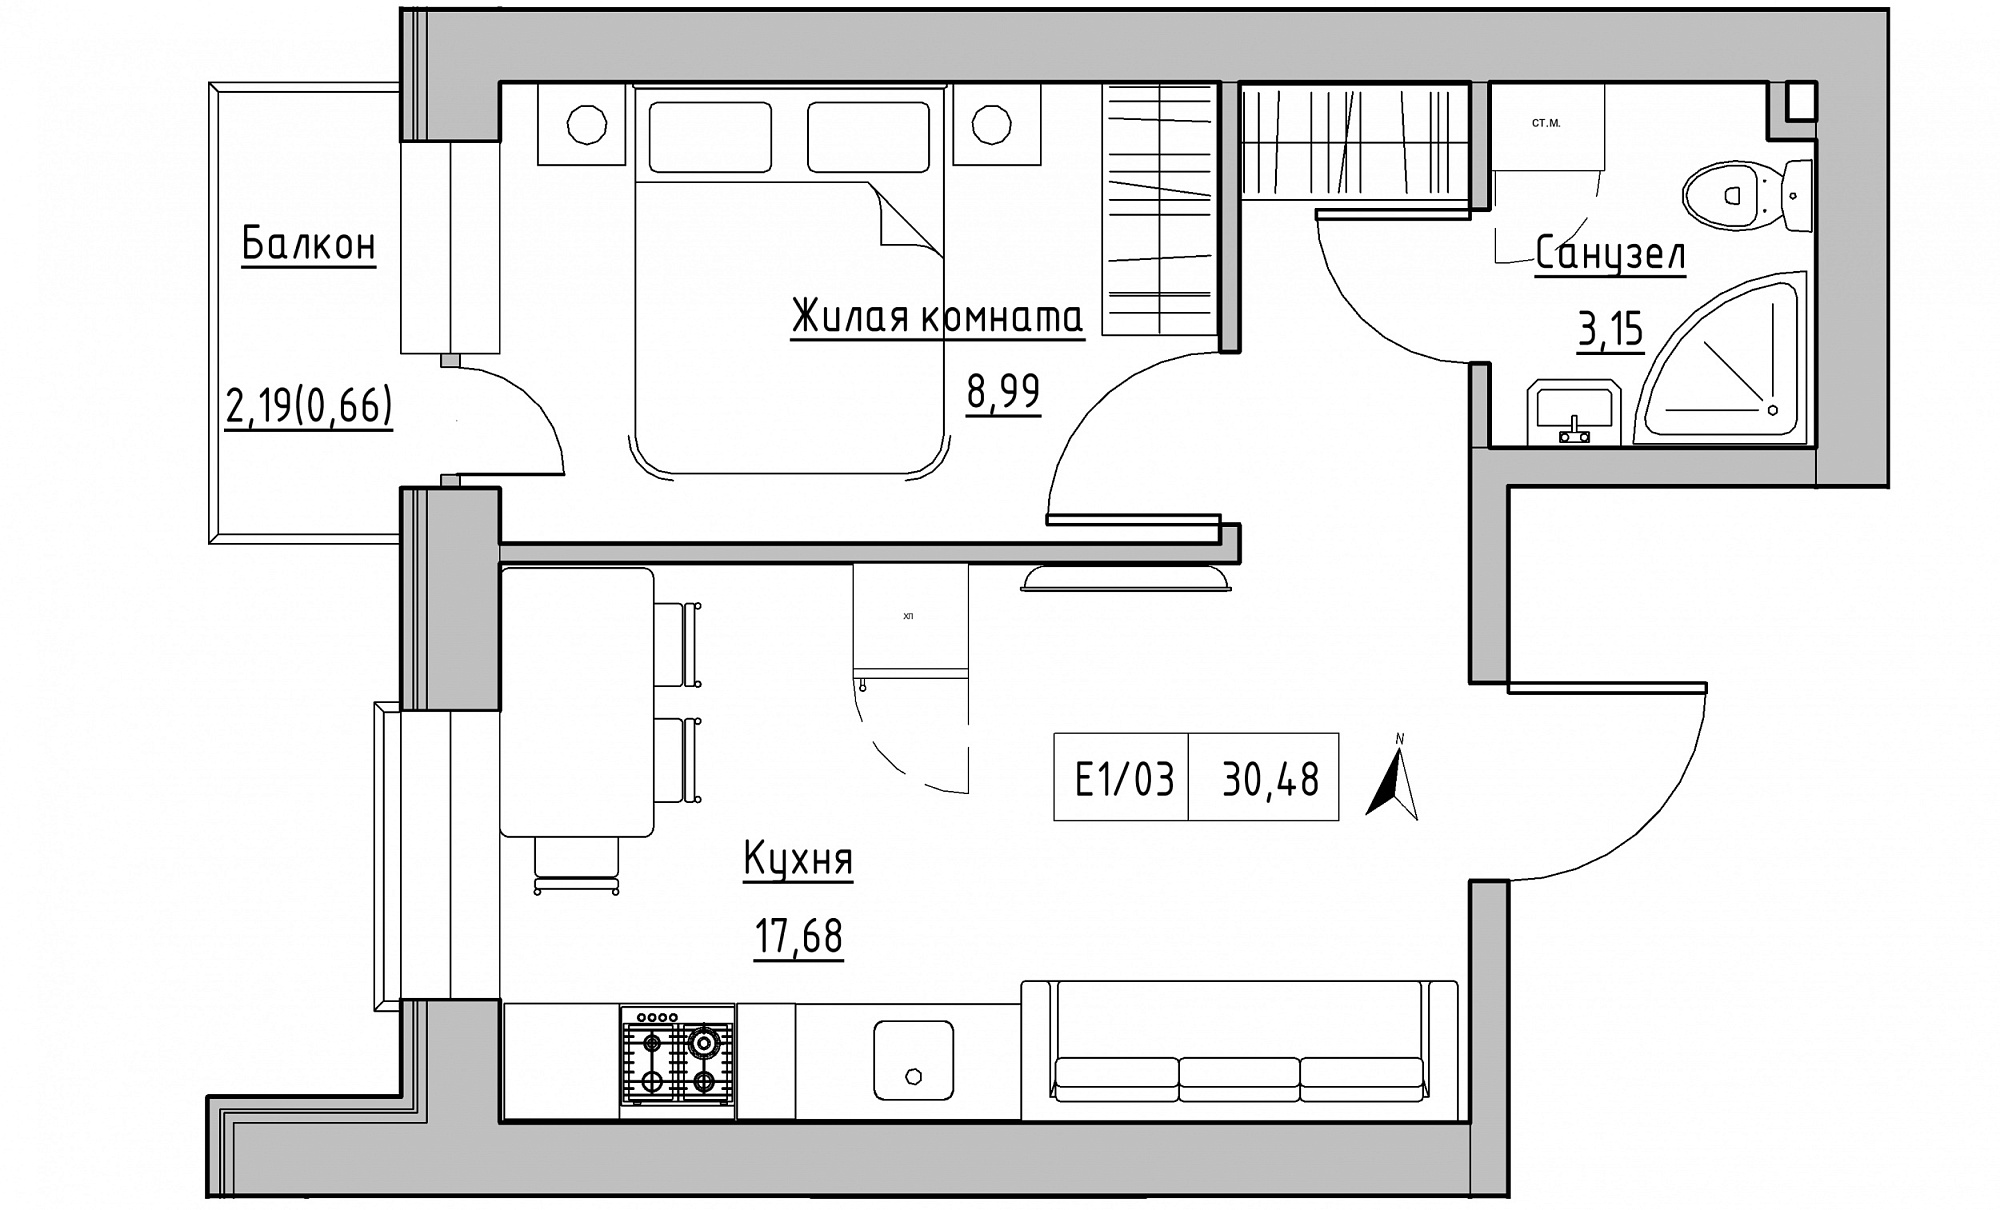 Планировка 1-к квартира площей 30.48м2, KS-015-05/0003.